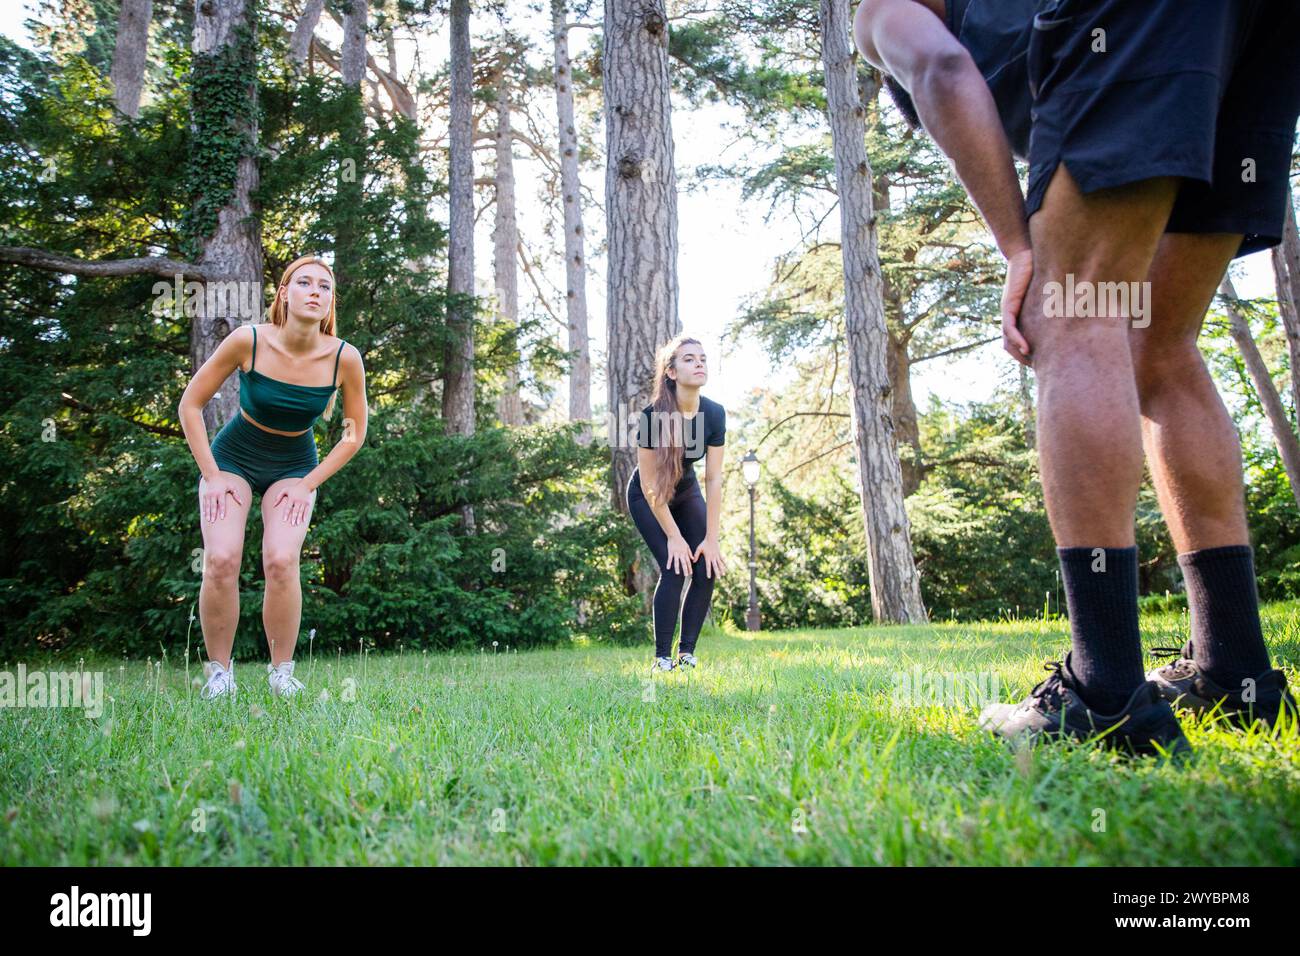 Tre persone sportive si stanno allenando in un parco pubblico, un personal trainer sta tenendo una lezione. Foto Stock